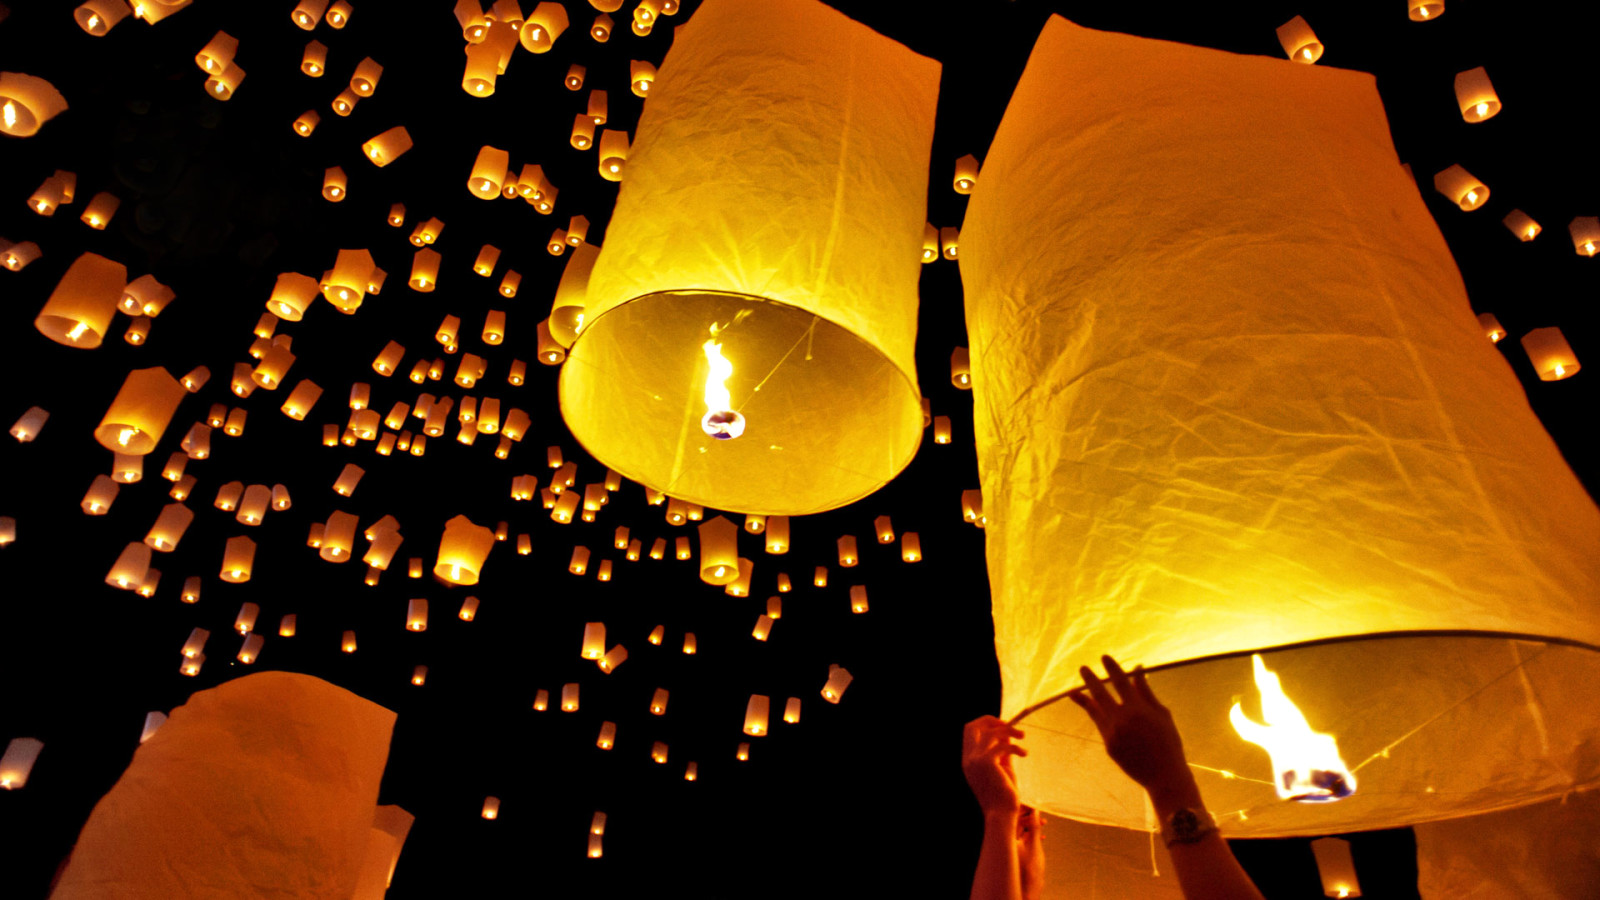 bầu trời, đèn, đêm, nước Thái Lan, đèn lồng, Loy Krathong, Chiang Mai